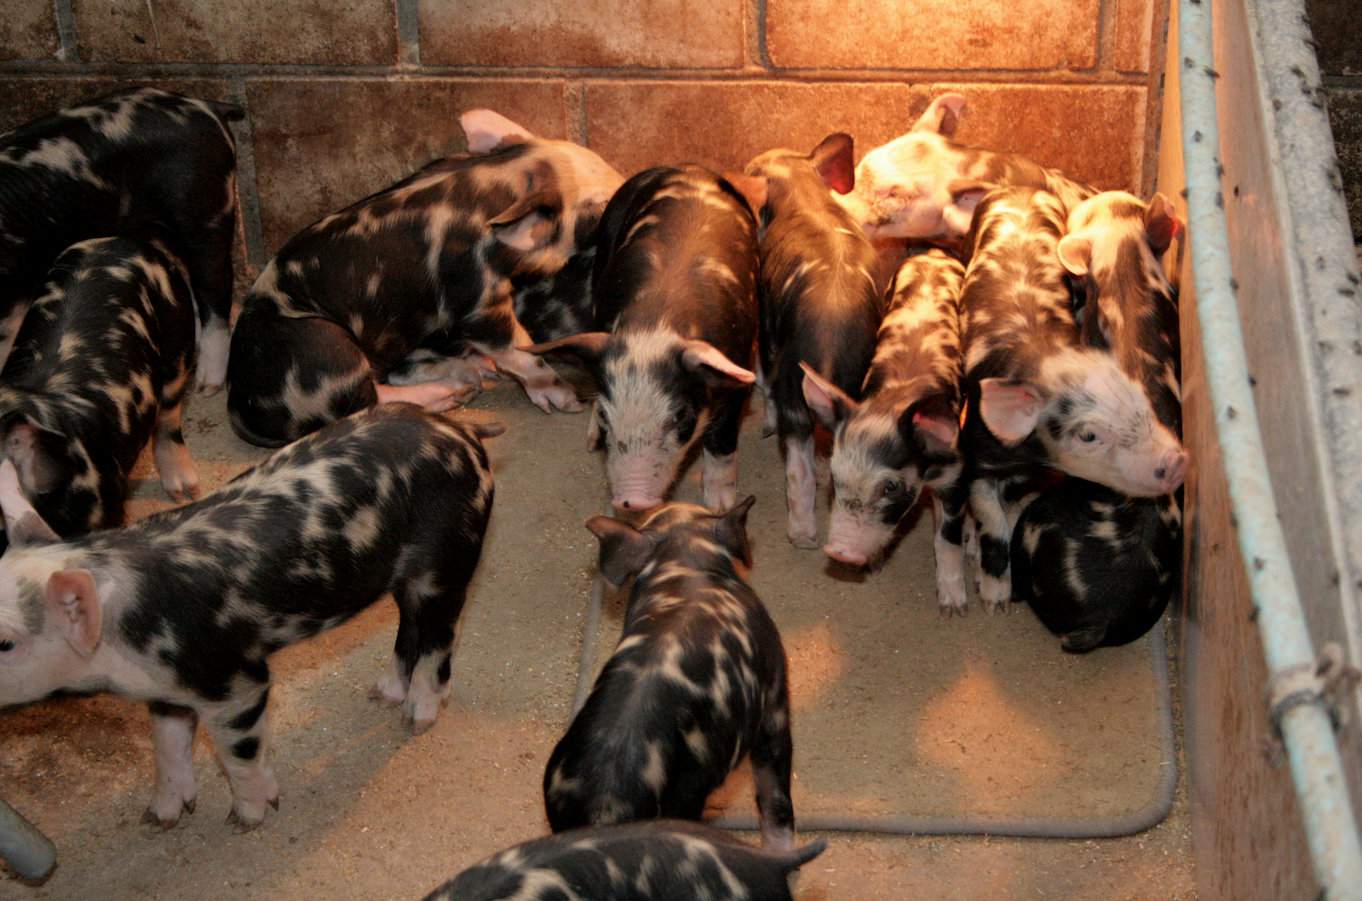 Stada zajmujące się produkcją świń rasy puławskiej są zlokalizowane głównie w województwach lubelskim i mazowieckim